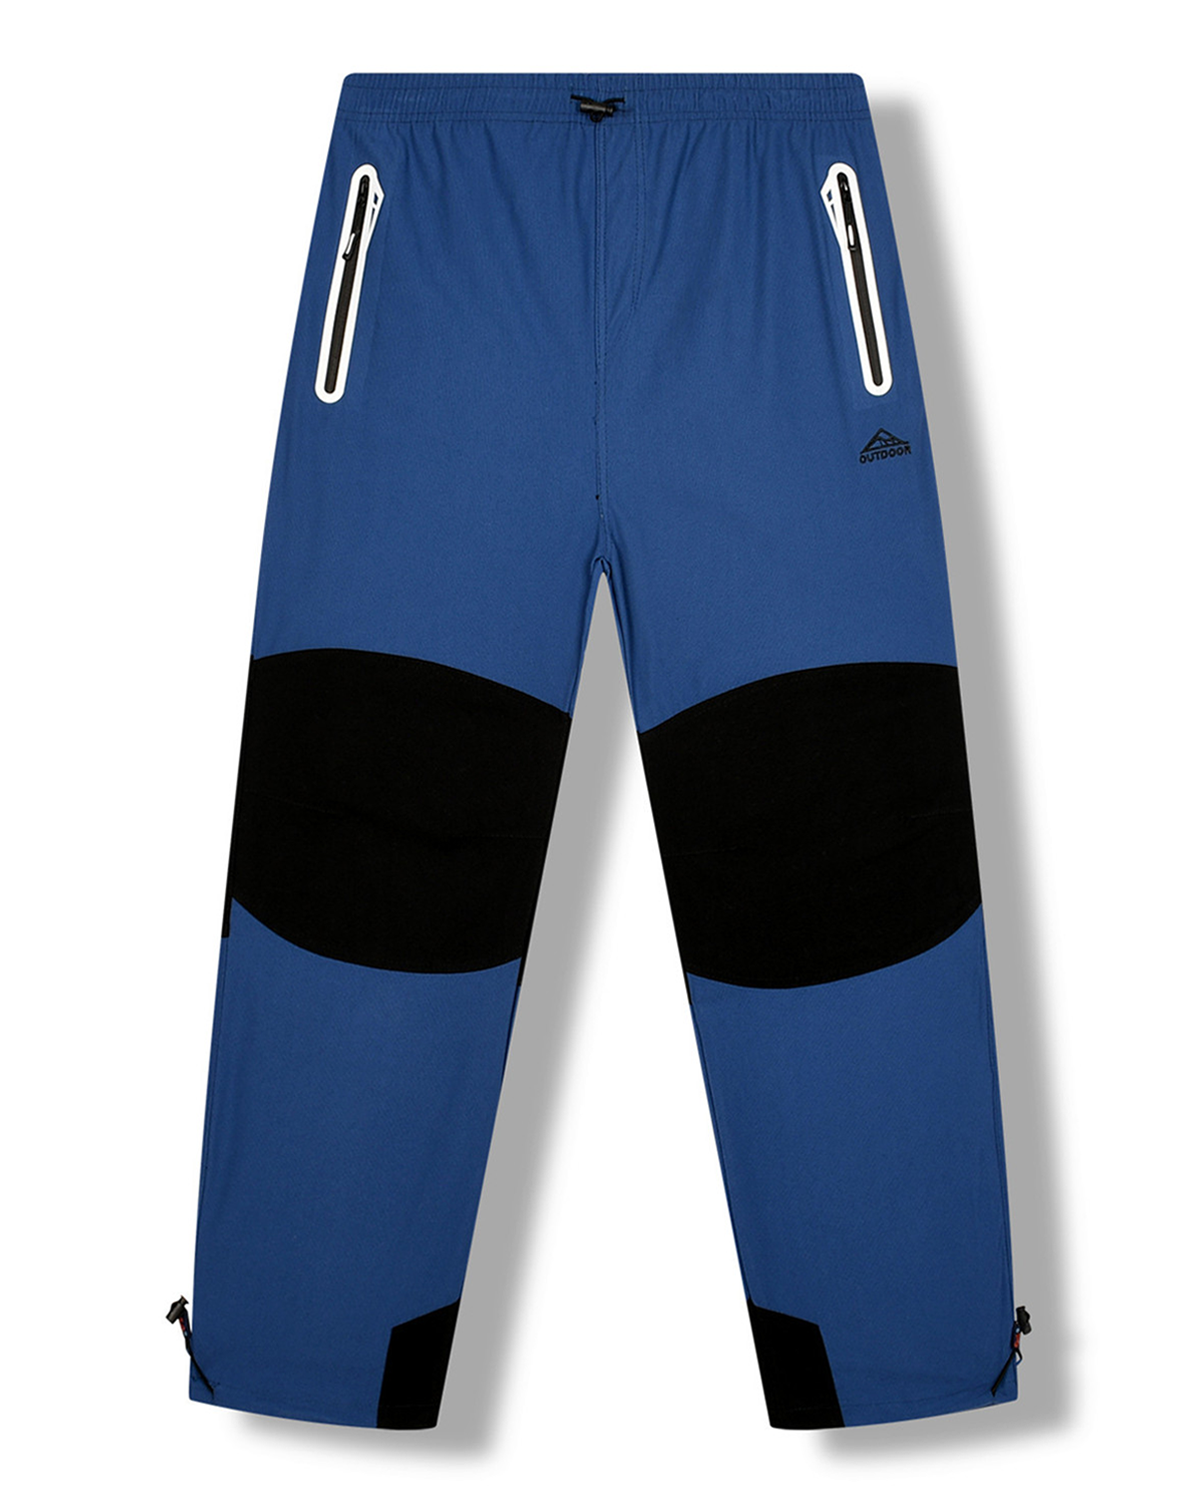 Pánské outdoorové kalhoty - KUGO G8553, modrá Barva: Modrá, Velikost: M